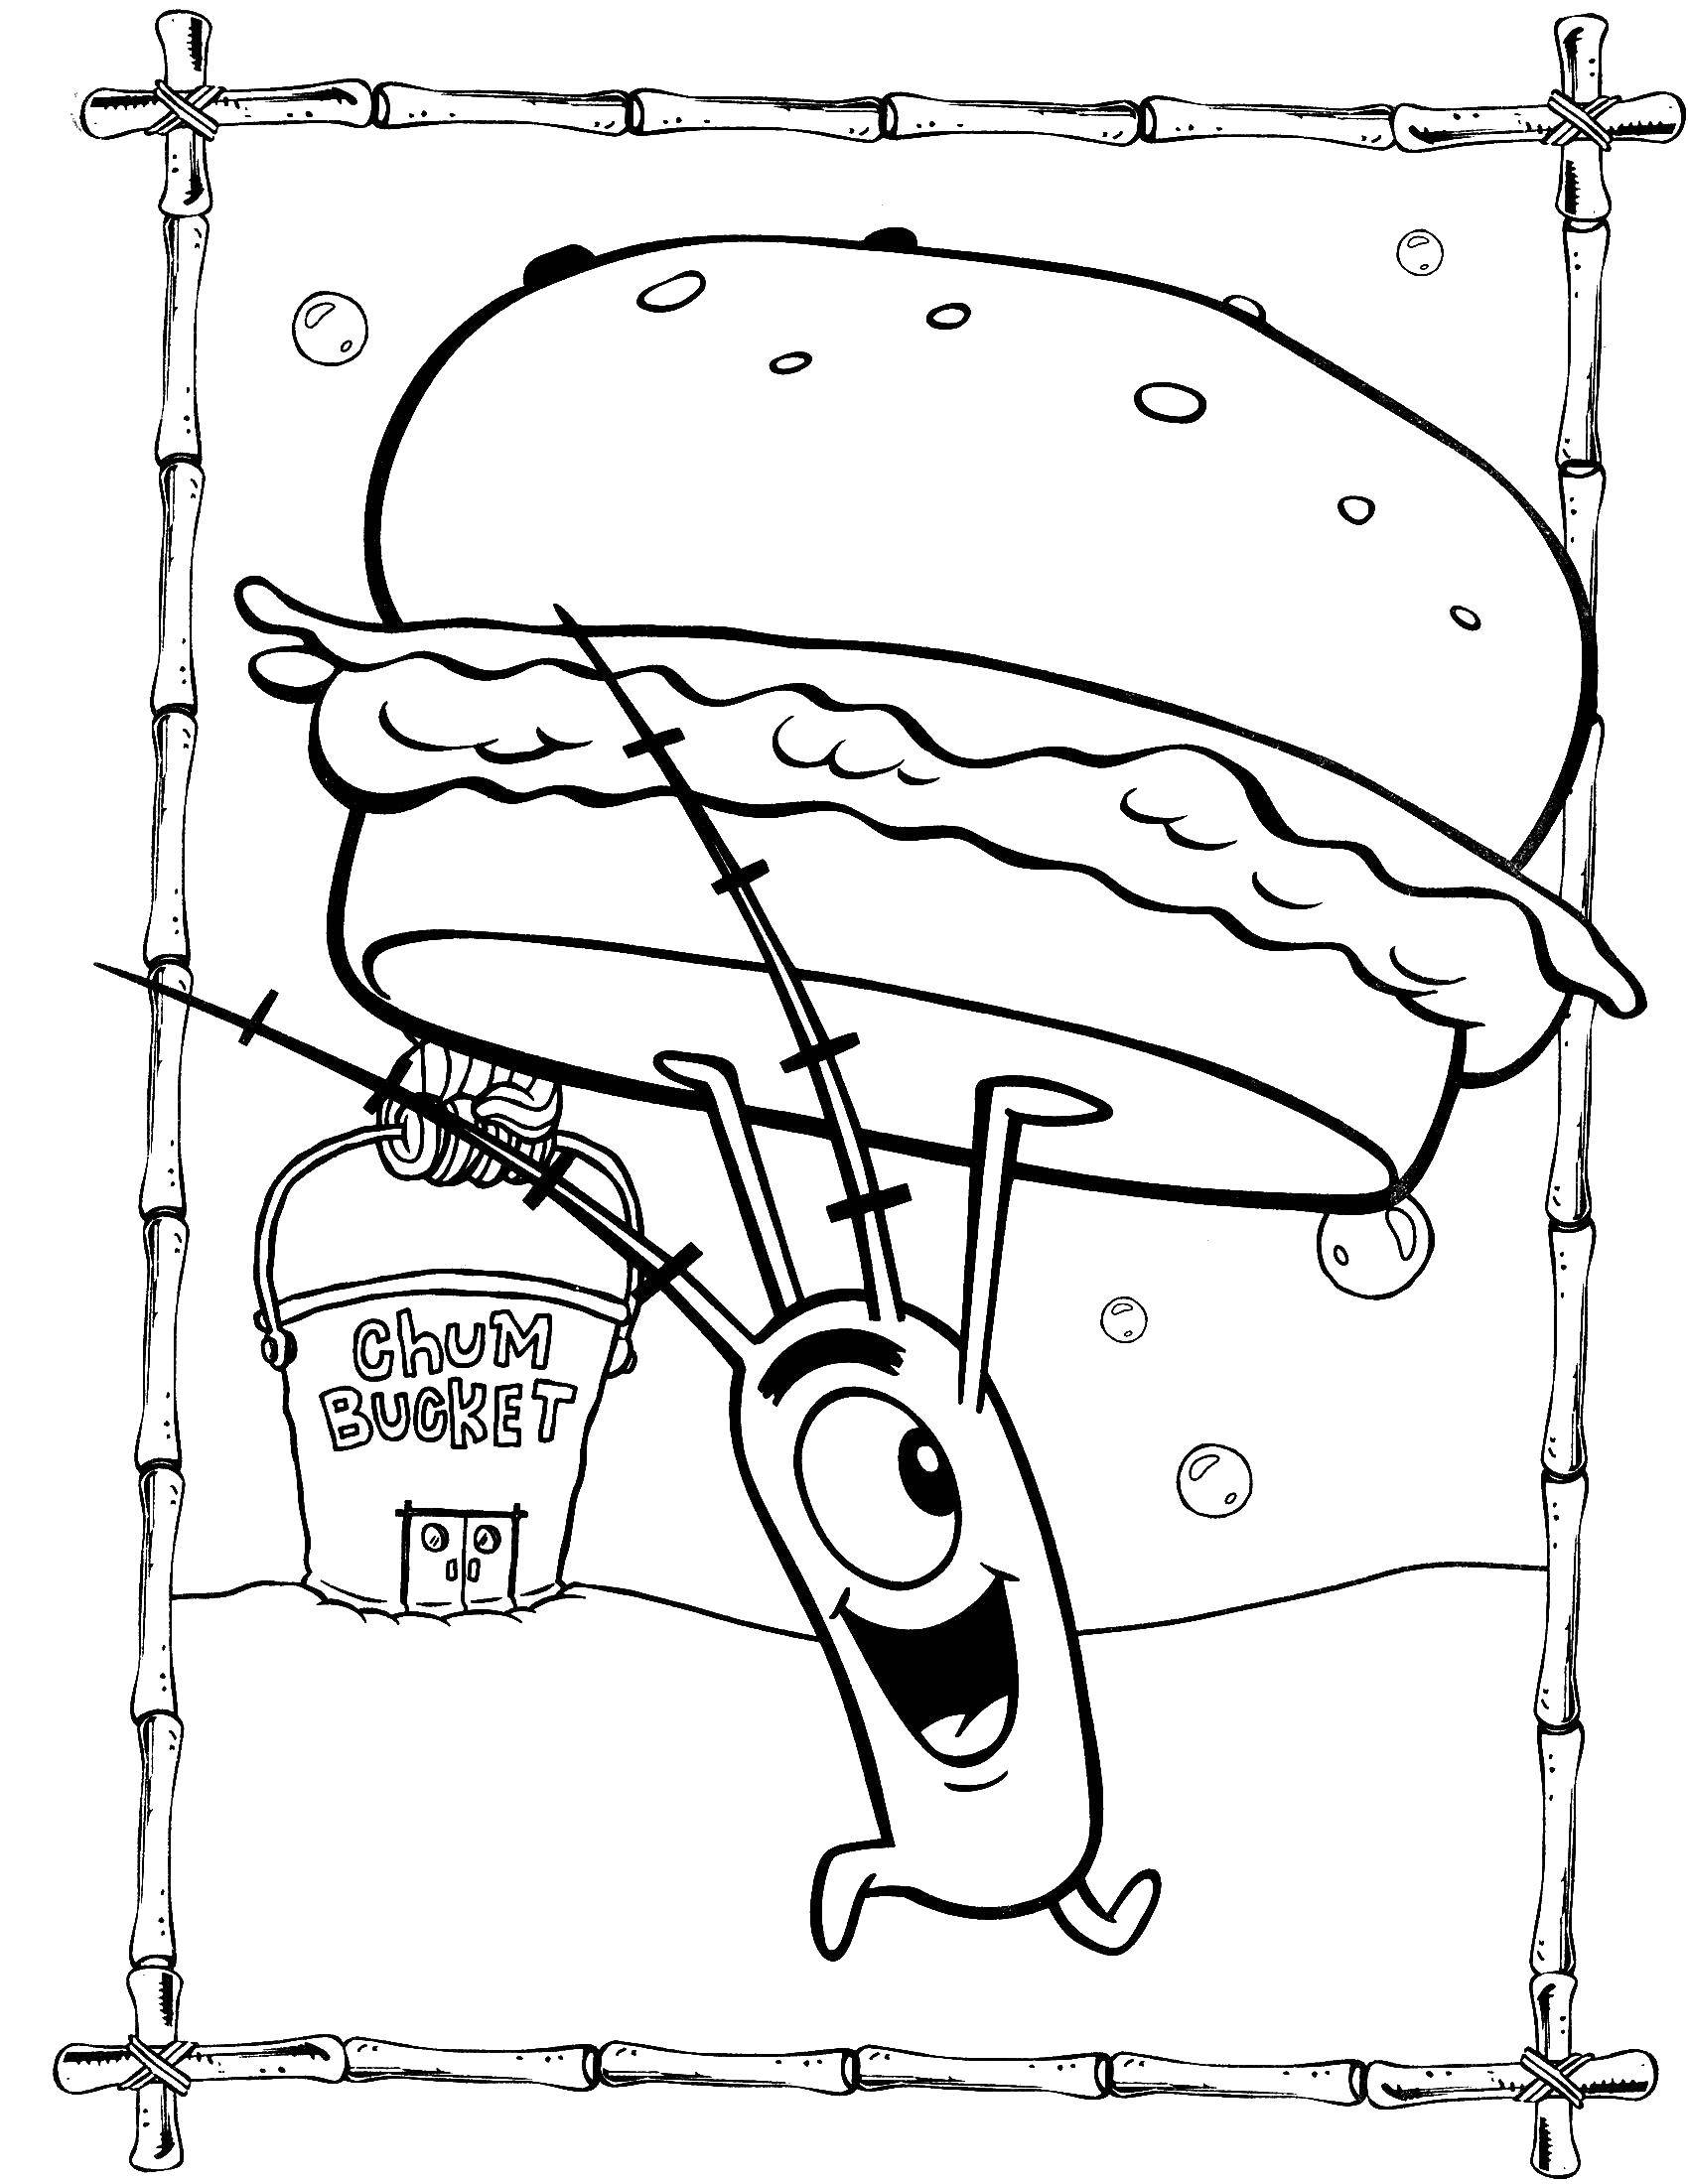 Название: Раскраска Планктон с большим гамбургером. Категория: Спанч Боб. Теги: Планктон, Спанч боб.